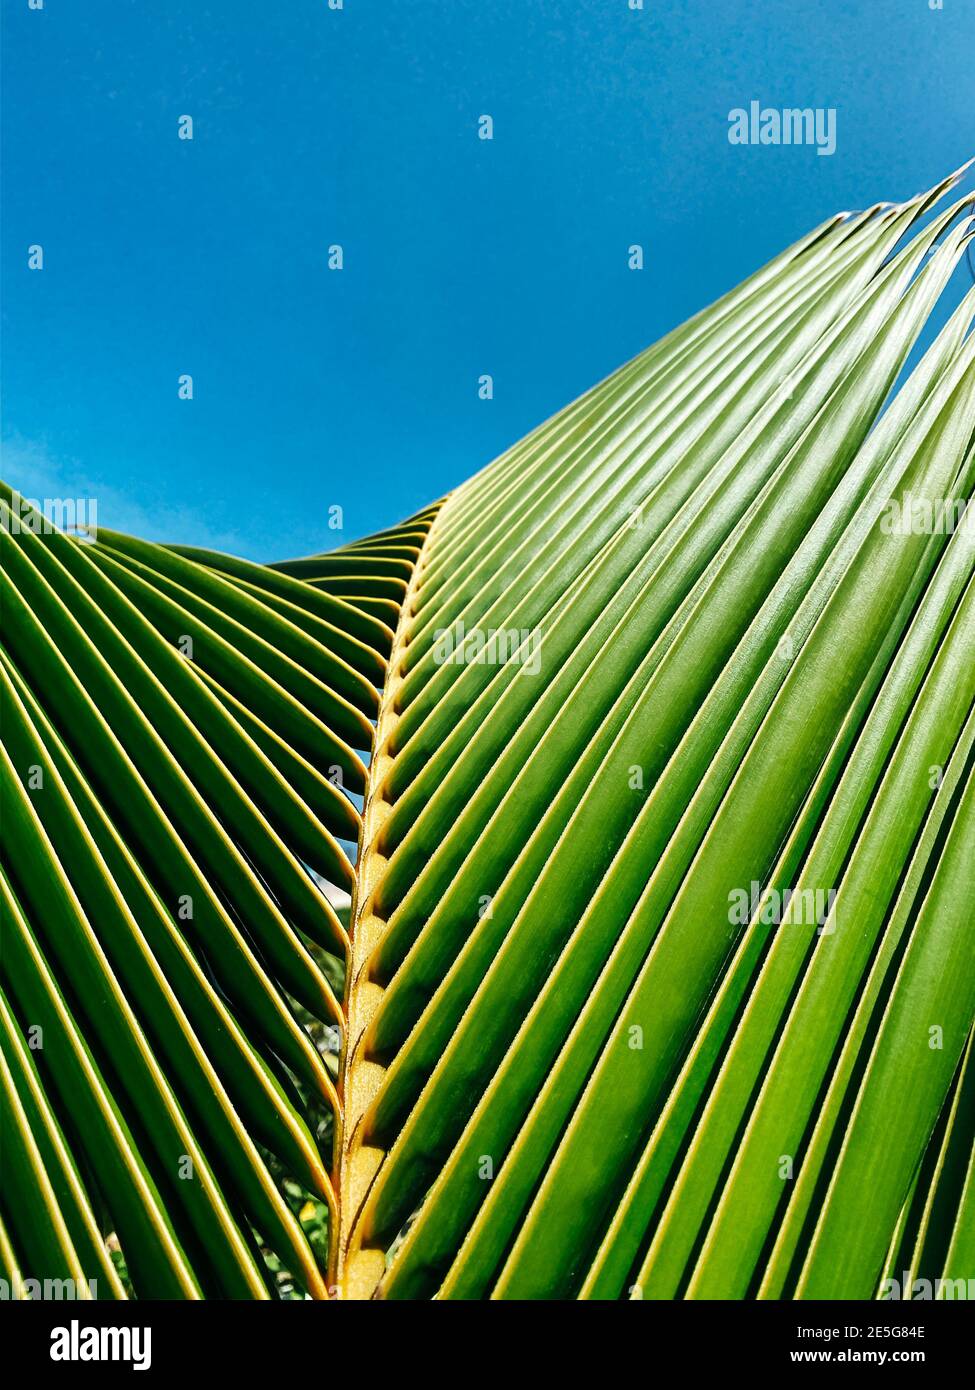 Primo piano della foglia di palma. Cielo blu chiaro sullo sfondo per l'inserimento di testo o logo. Concetto estivo. Spazio di copia Foto Stock